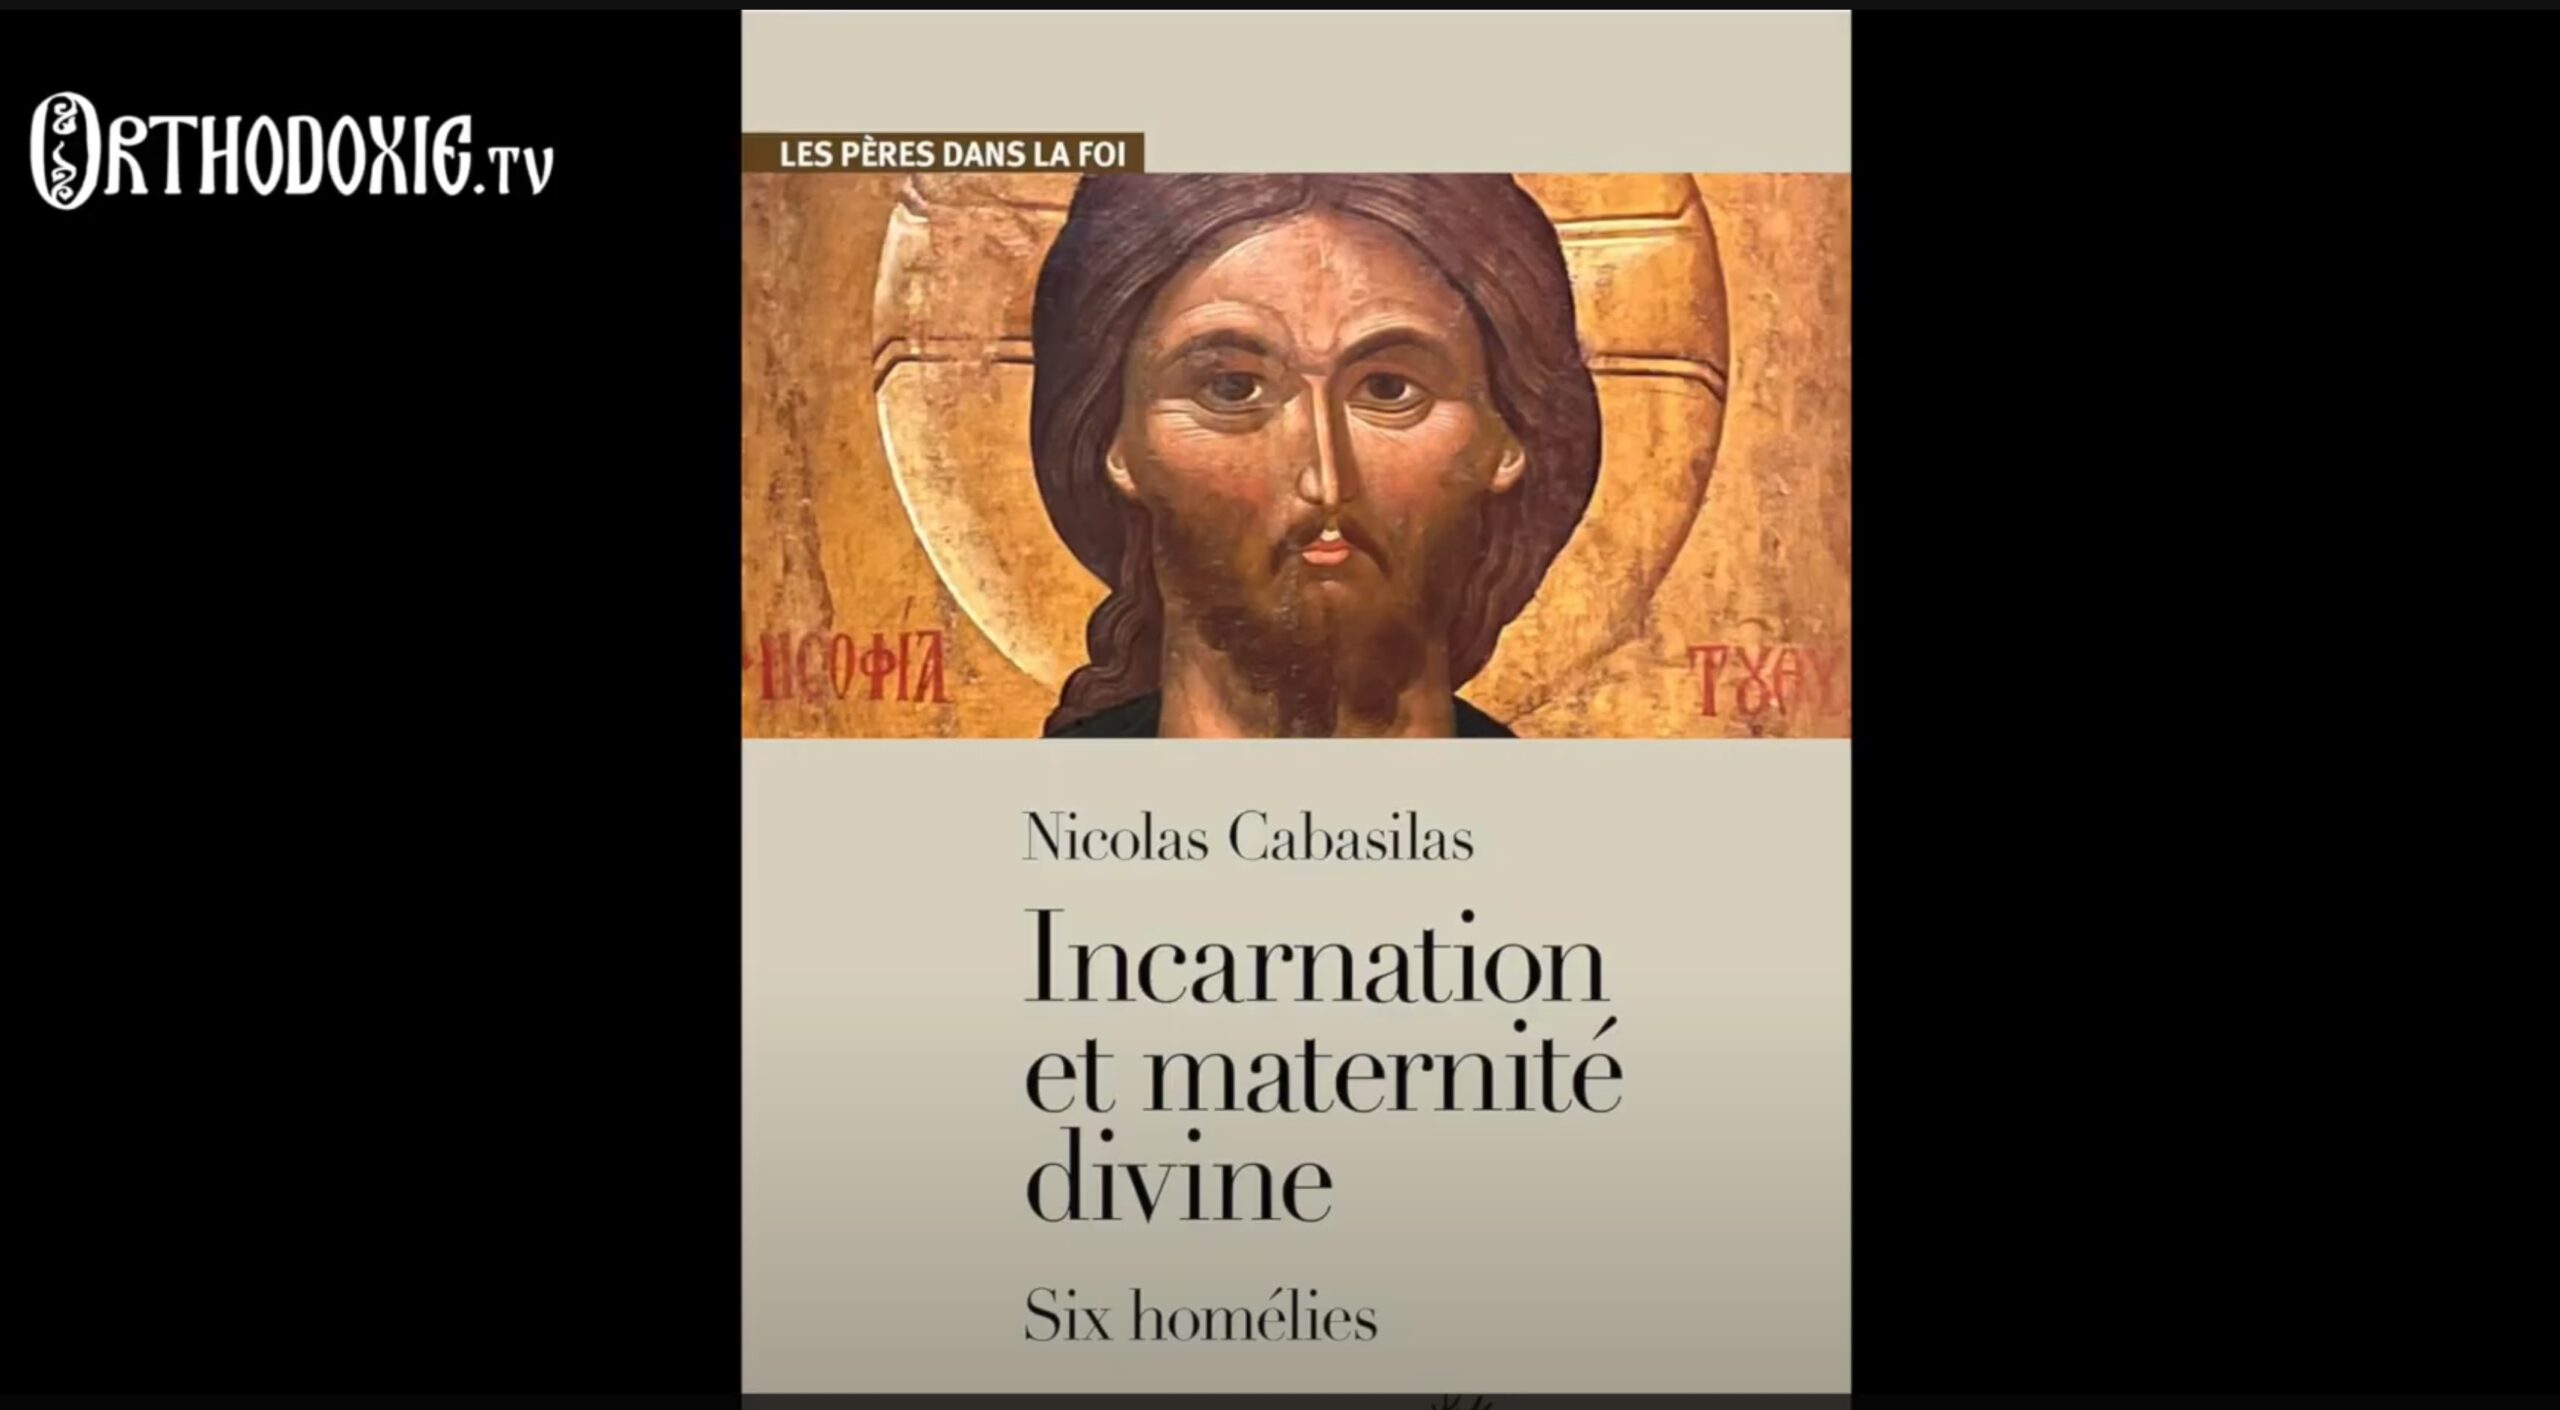 Présentation de la traduction de « Nicolas Cabasilas Incarnation et maternité divine : Six homélies »